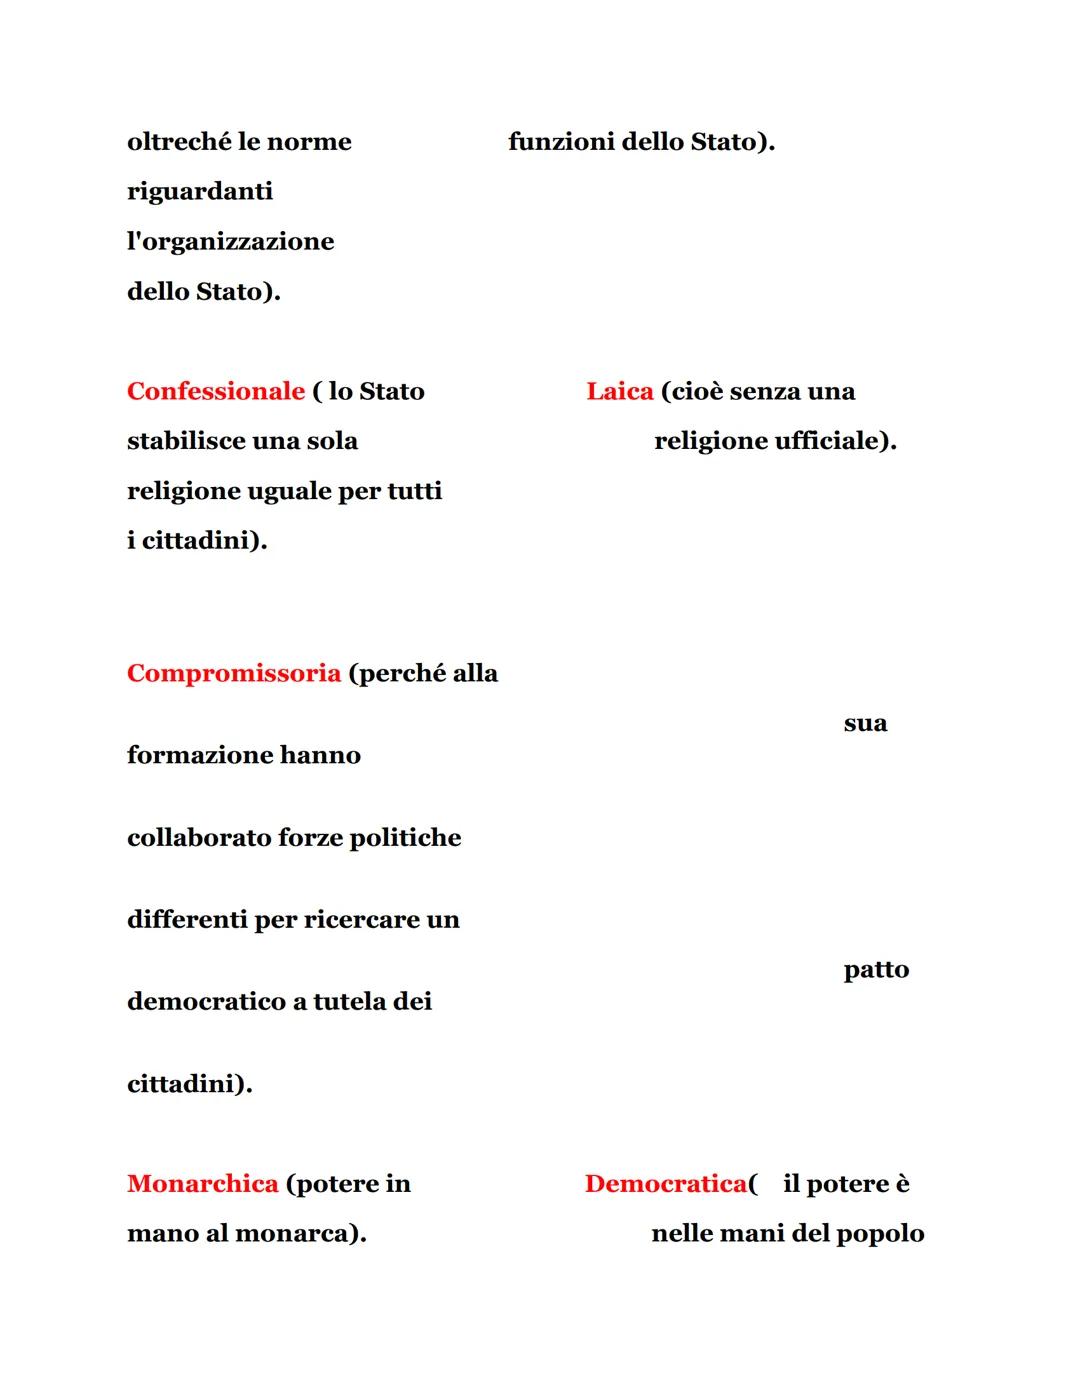 Differenze tra lo Statuto Albertino e la
Costituzione italiana.
Statuto Albertino
italiana
Flessibile (può essere
modificata da una legge
or